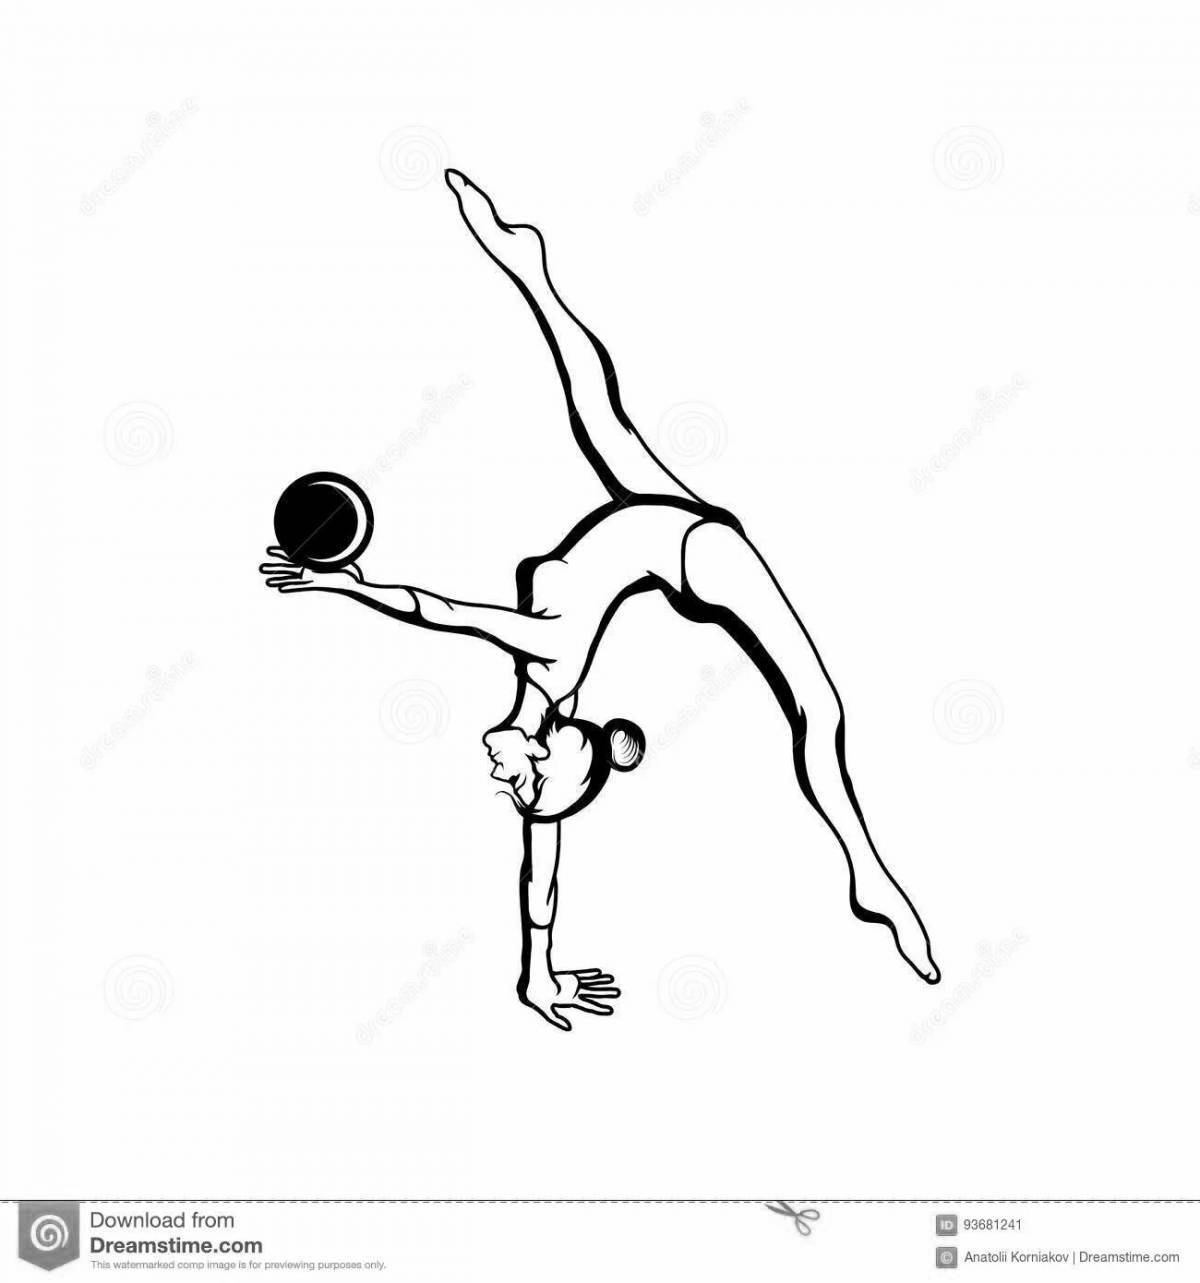 Динамическая гимнастка с мячом